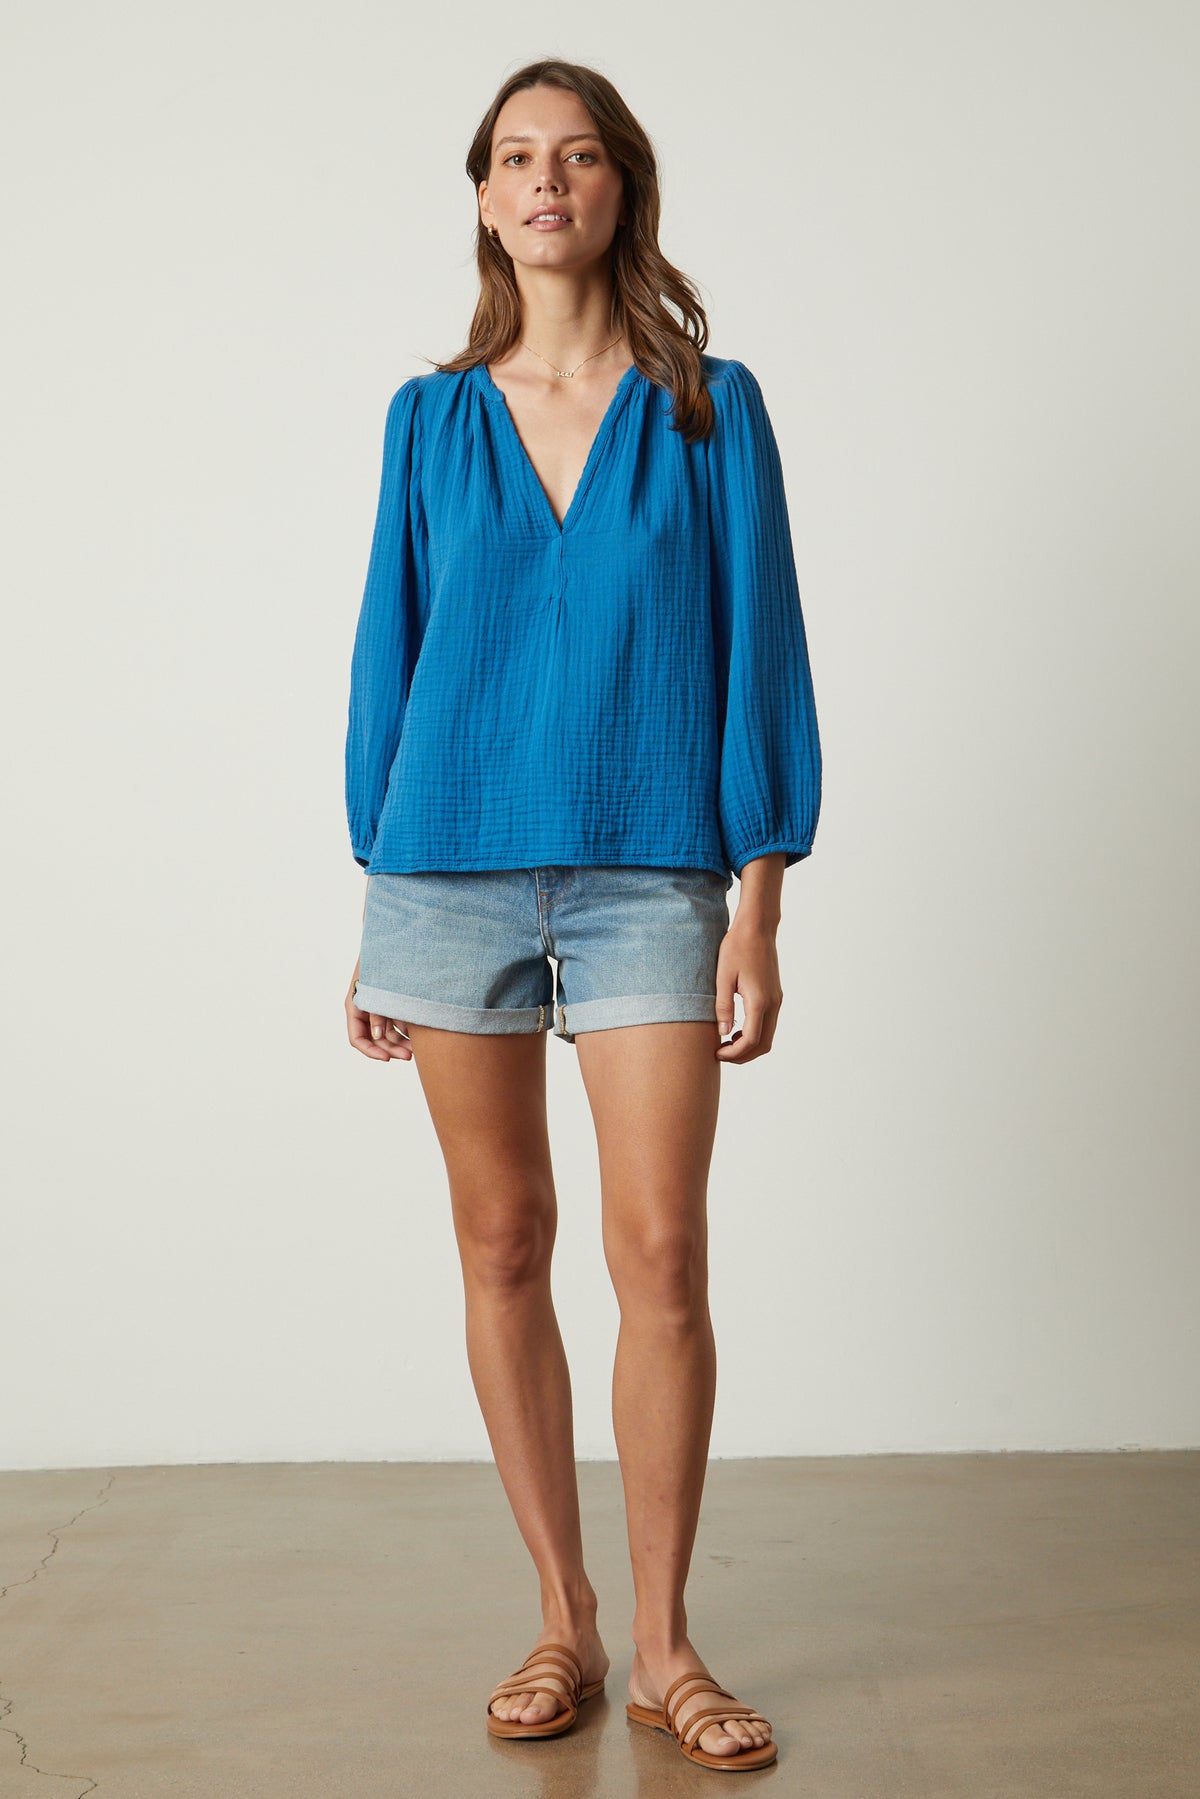 the model is wearing Velvet by Graham & Spencer denim shorts and a Velvet by Graham & Spencer blue blouse.-26312393392321